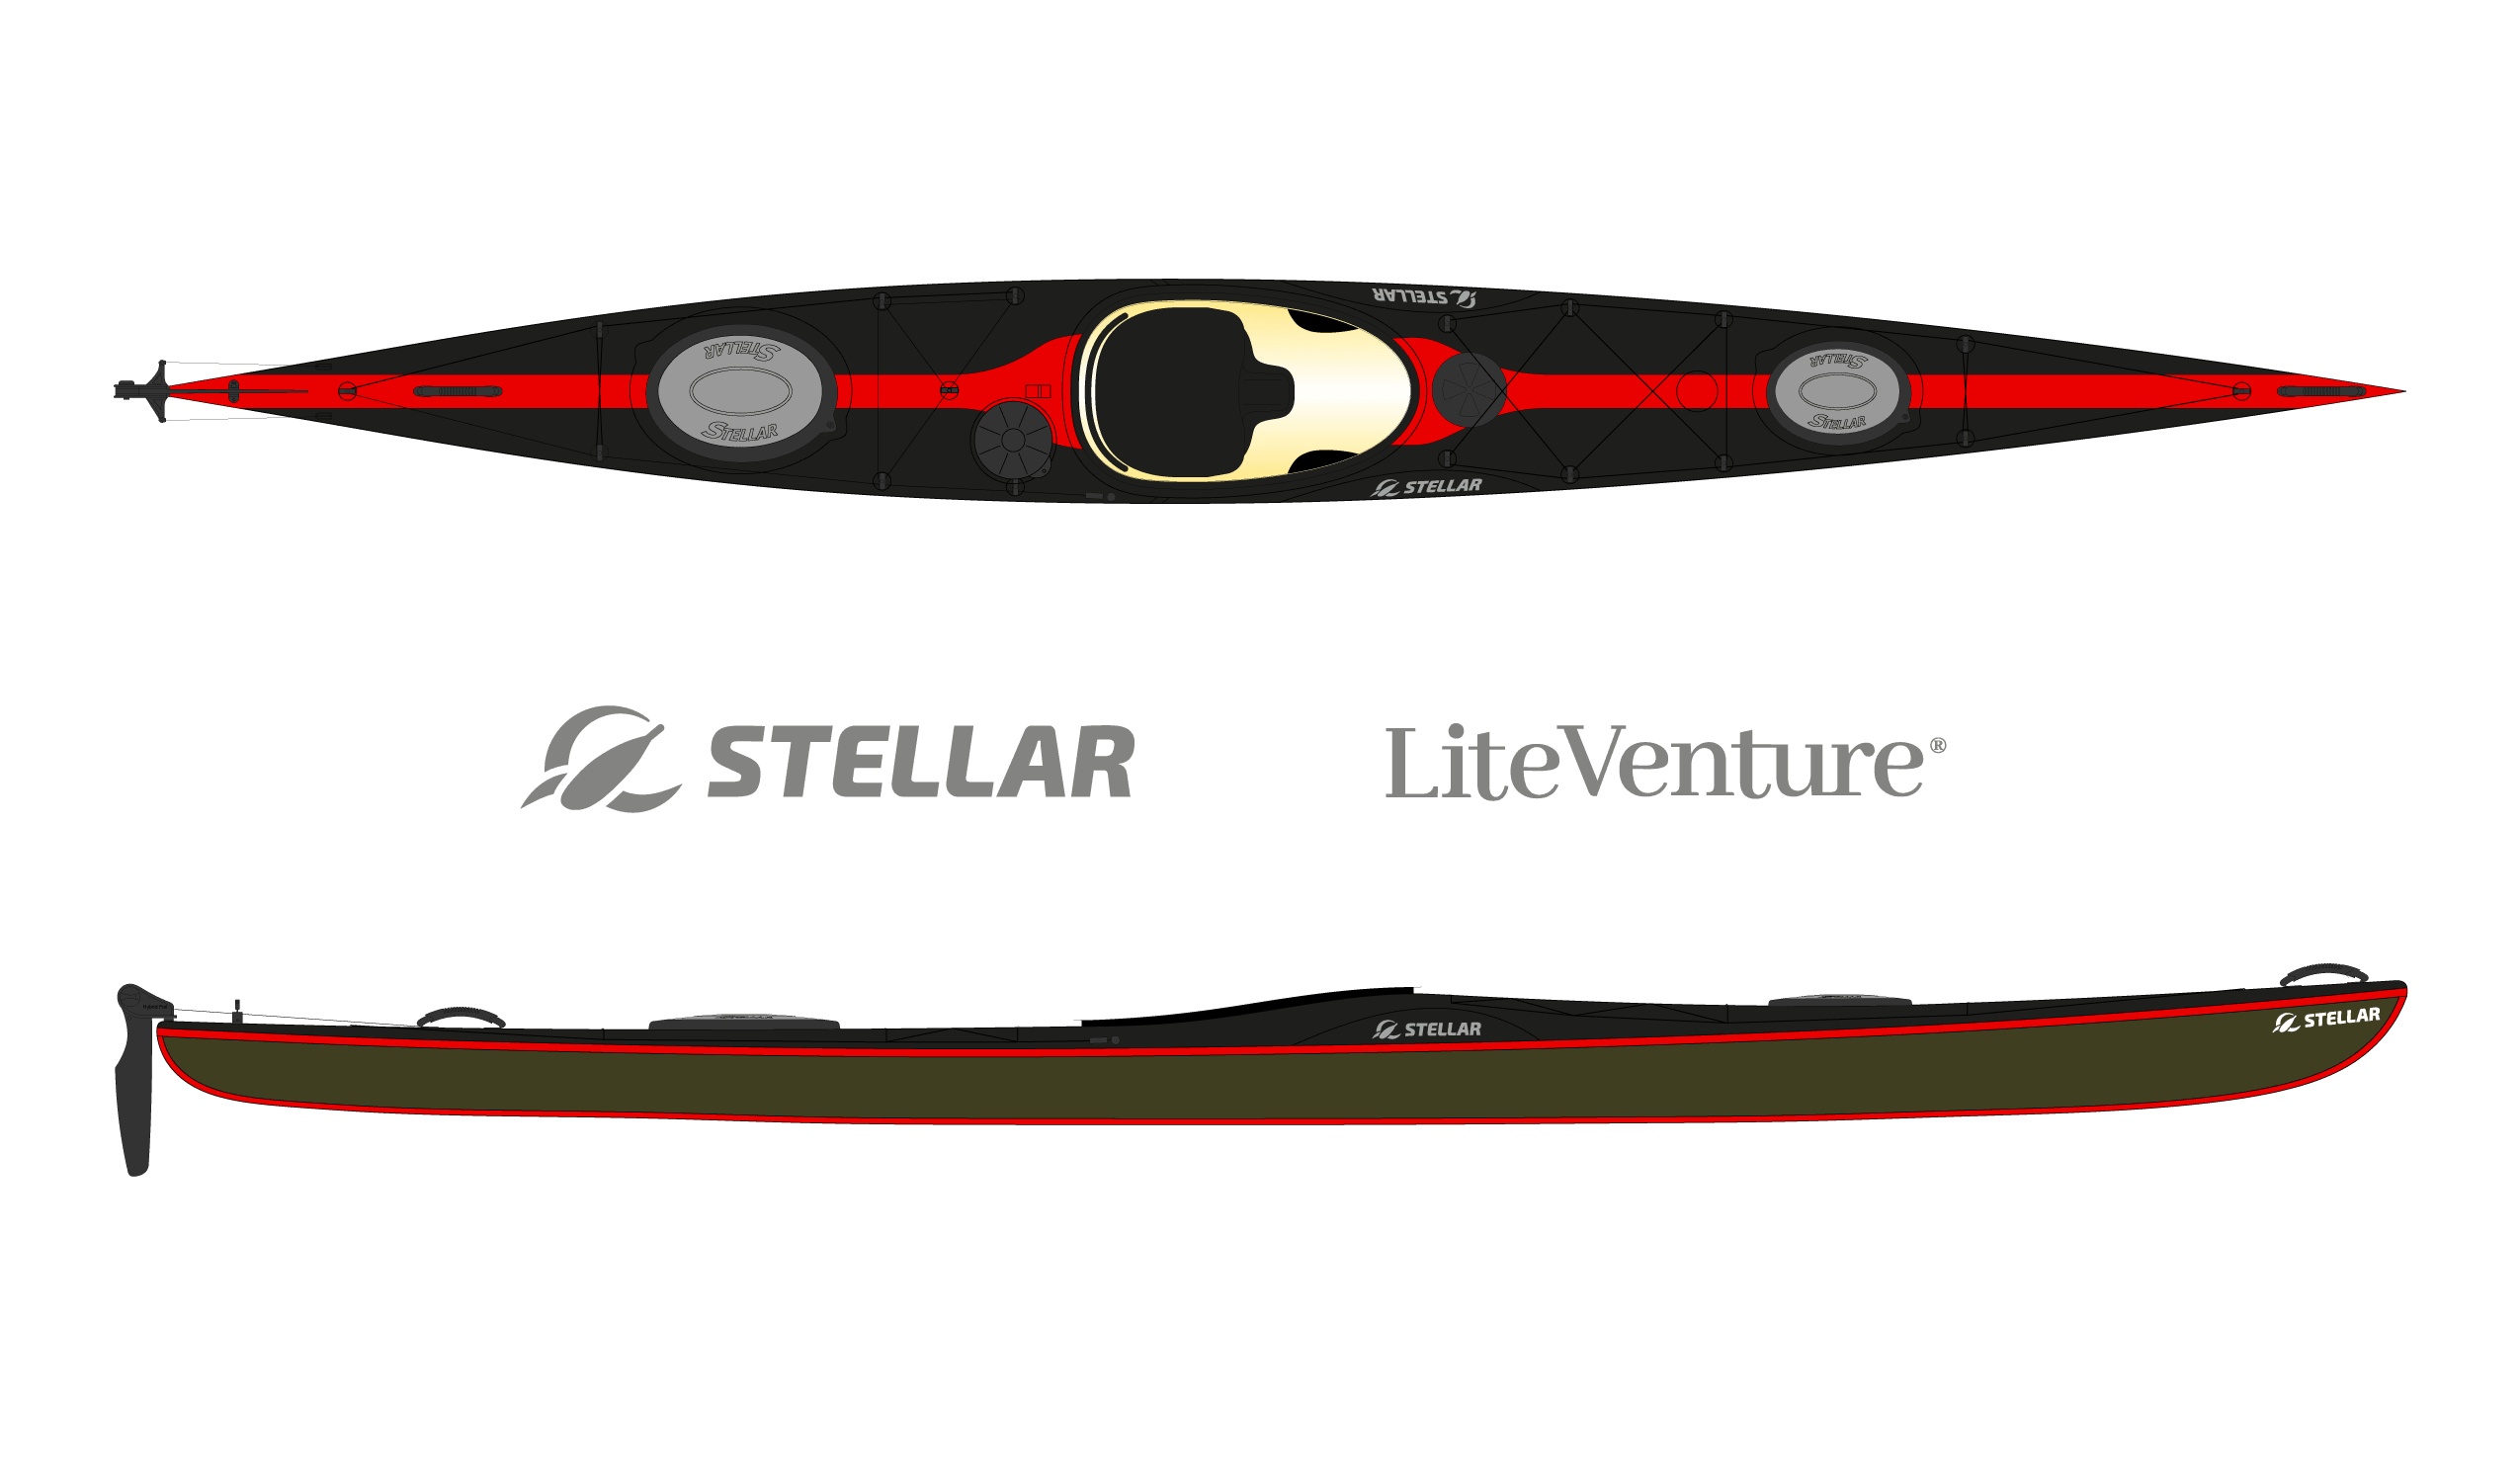 Produktbild von Kajak " S18 Expedition Multisport-schwarz rot " der Marke STELLAR Lightweight für 3490.00 €. Erhältlich online bei Lite Venture ( www.liteventure.de )